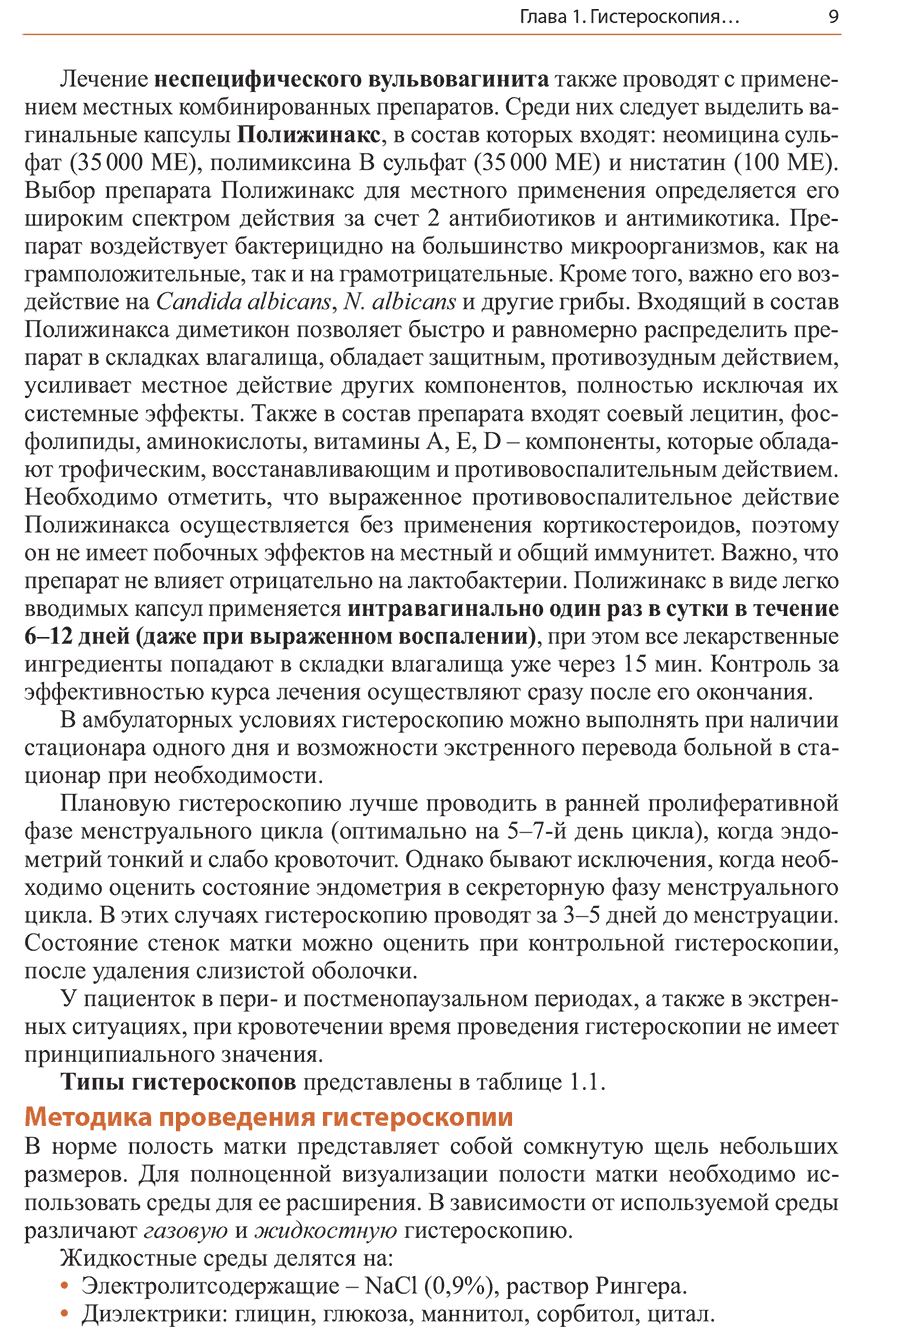 Пример страницы из книги "Внутриматочная патология: клиника, гистероскопическая диагностика и лечение" - Рудакова Е. Б.